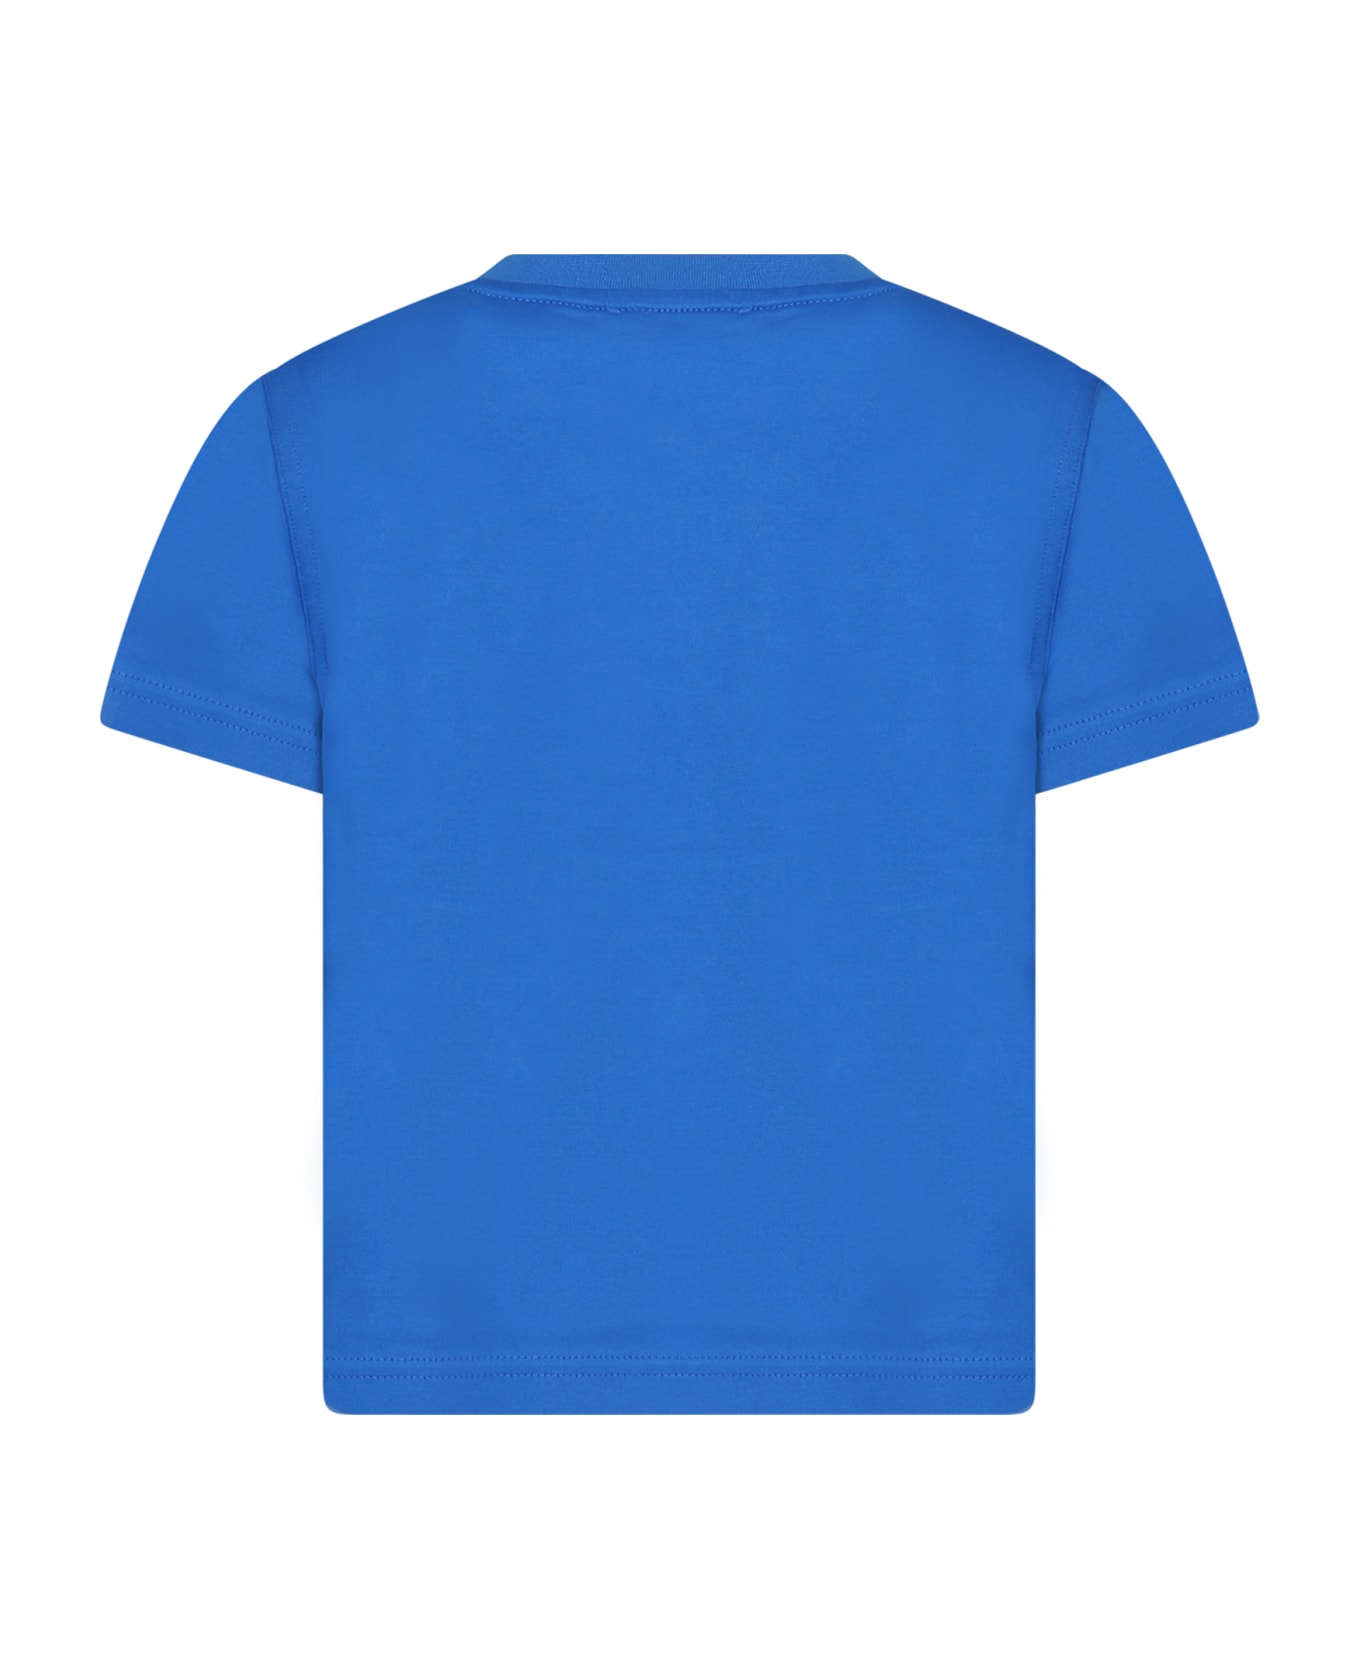 Burberry Light Blue T-shirt For Boy With Logo - Light Blue